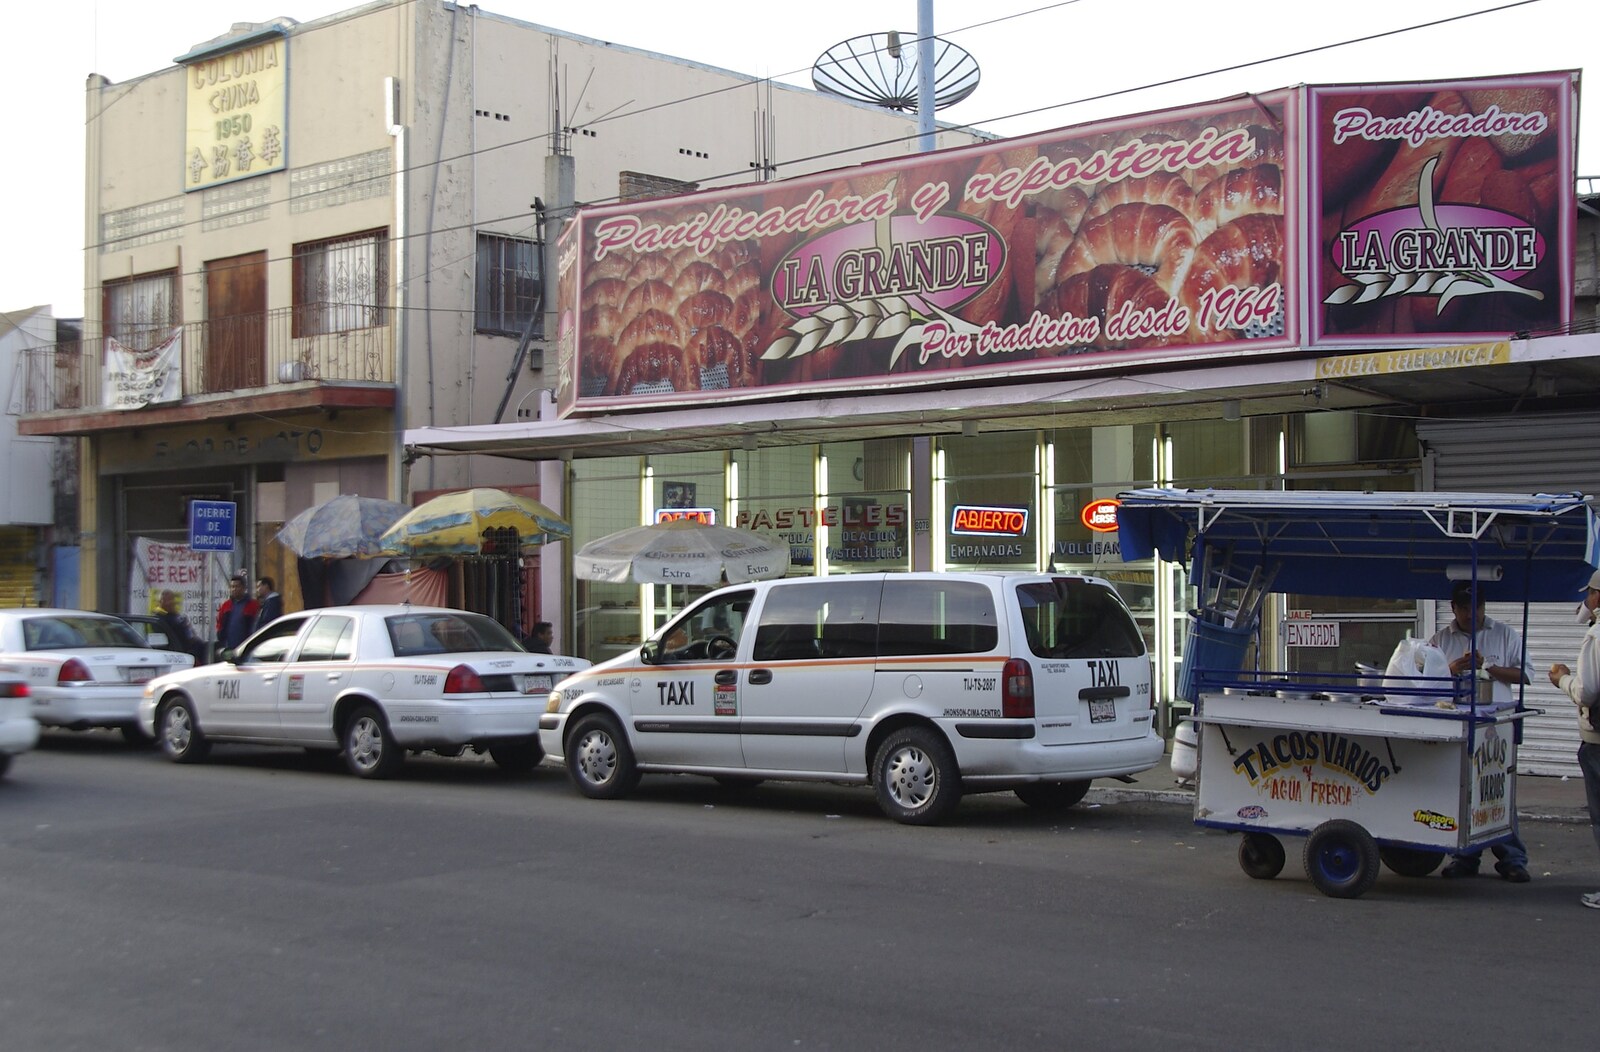 Rosarito and Tijuana, Baja California, Mexico - 2nd March 2008: A Tijuana bakery